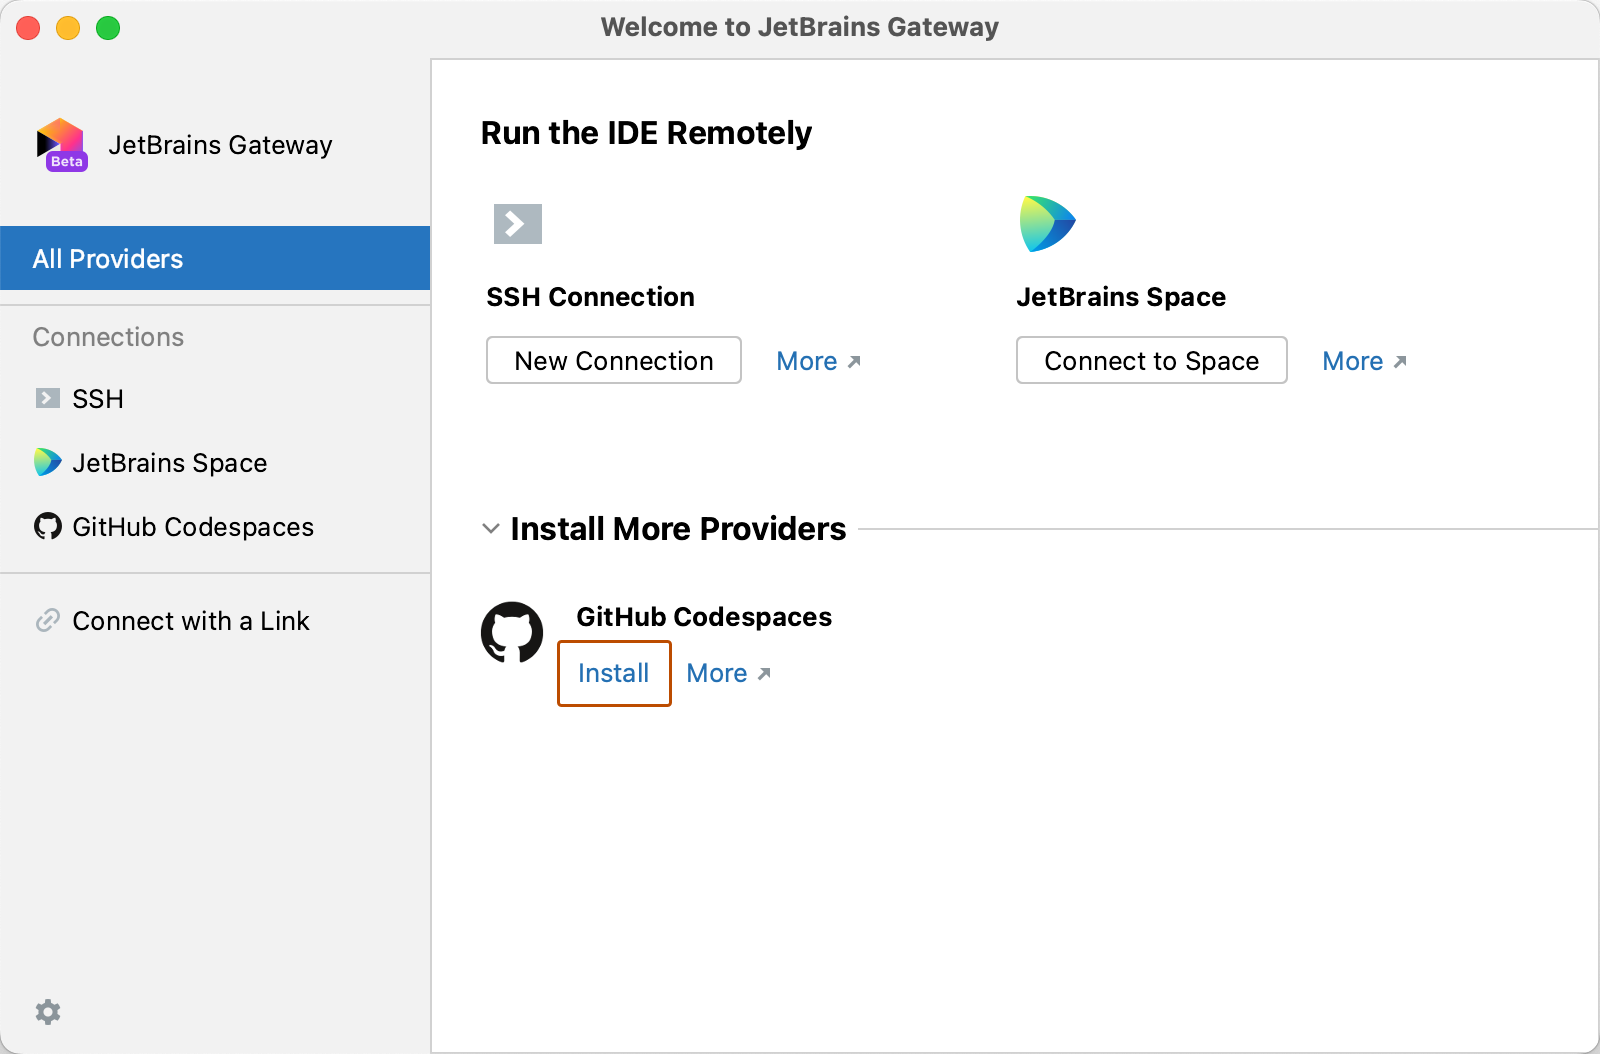 [JetBrains Gateway へようこそ] ページのスクリーンショット。[その他のプロバイダーのインストール] の下に "GitHub Codespaces" が表示されています。